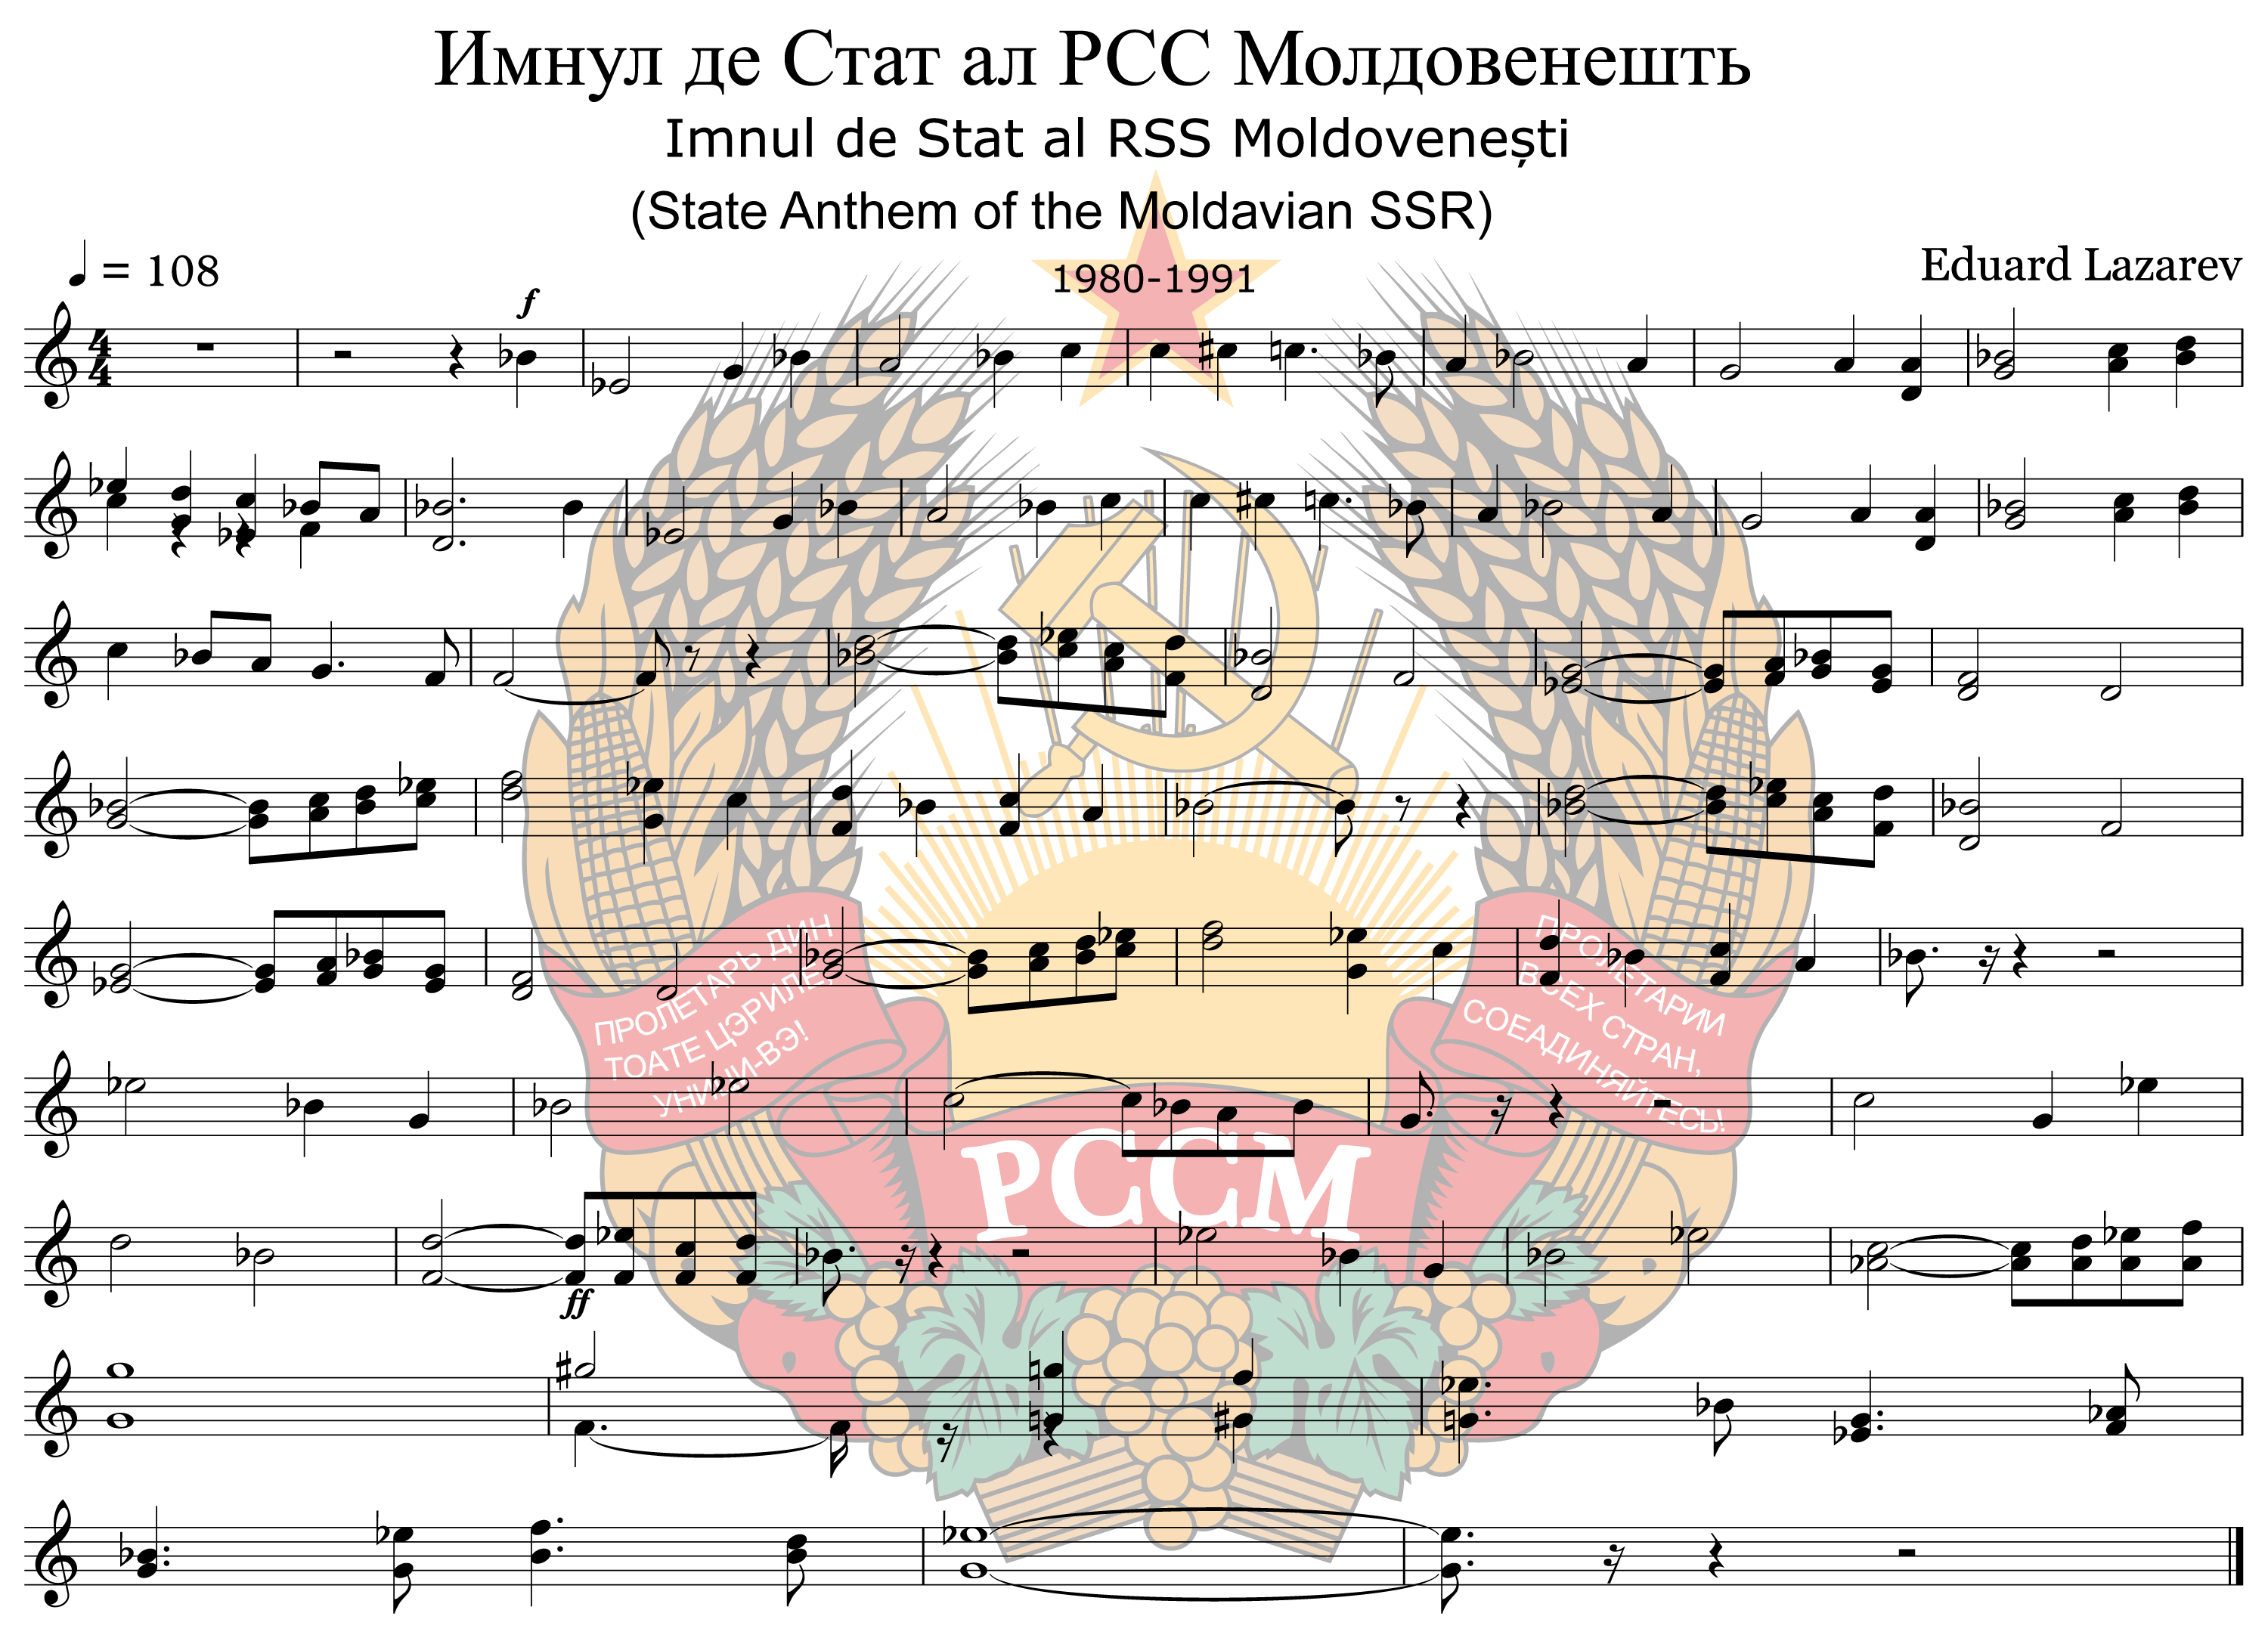 摩爾達維亞蘇維埃社會主義共和國國歌樂譜